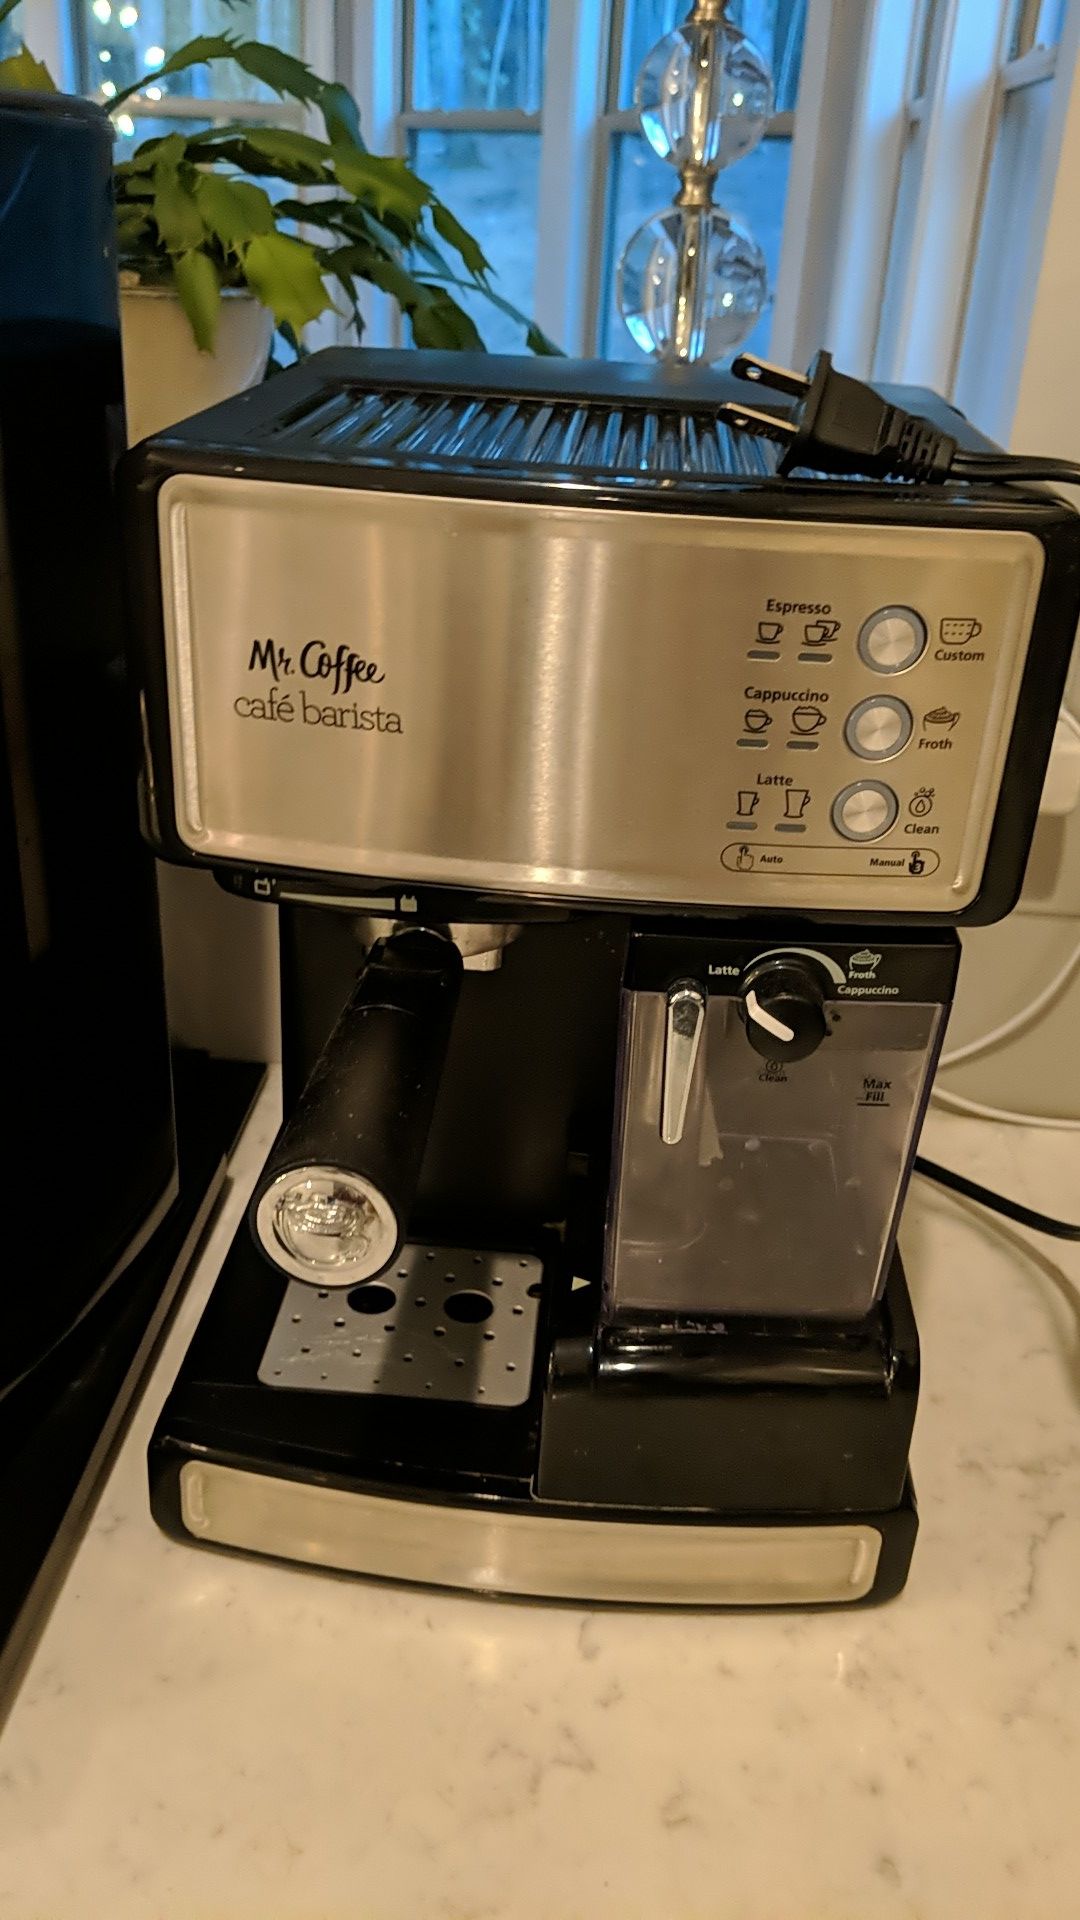 Mr Coffee Cafe Barista Espresso, Cappuccino and Latte Maker